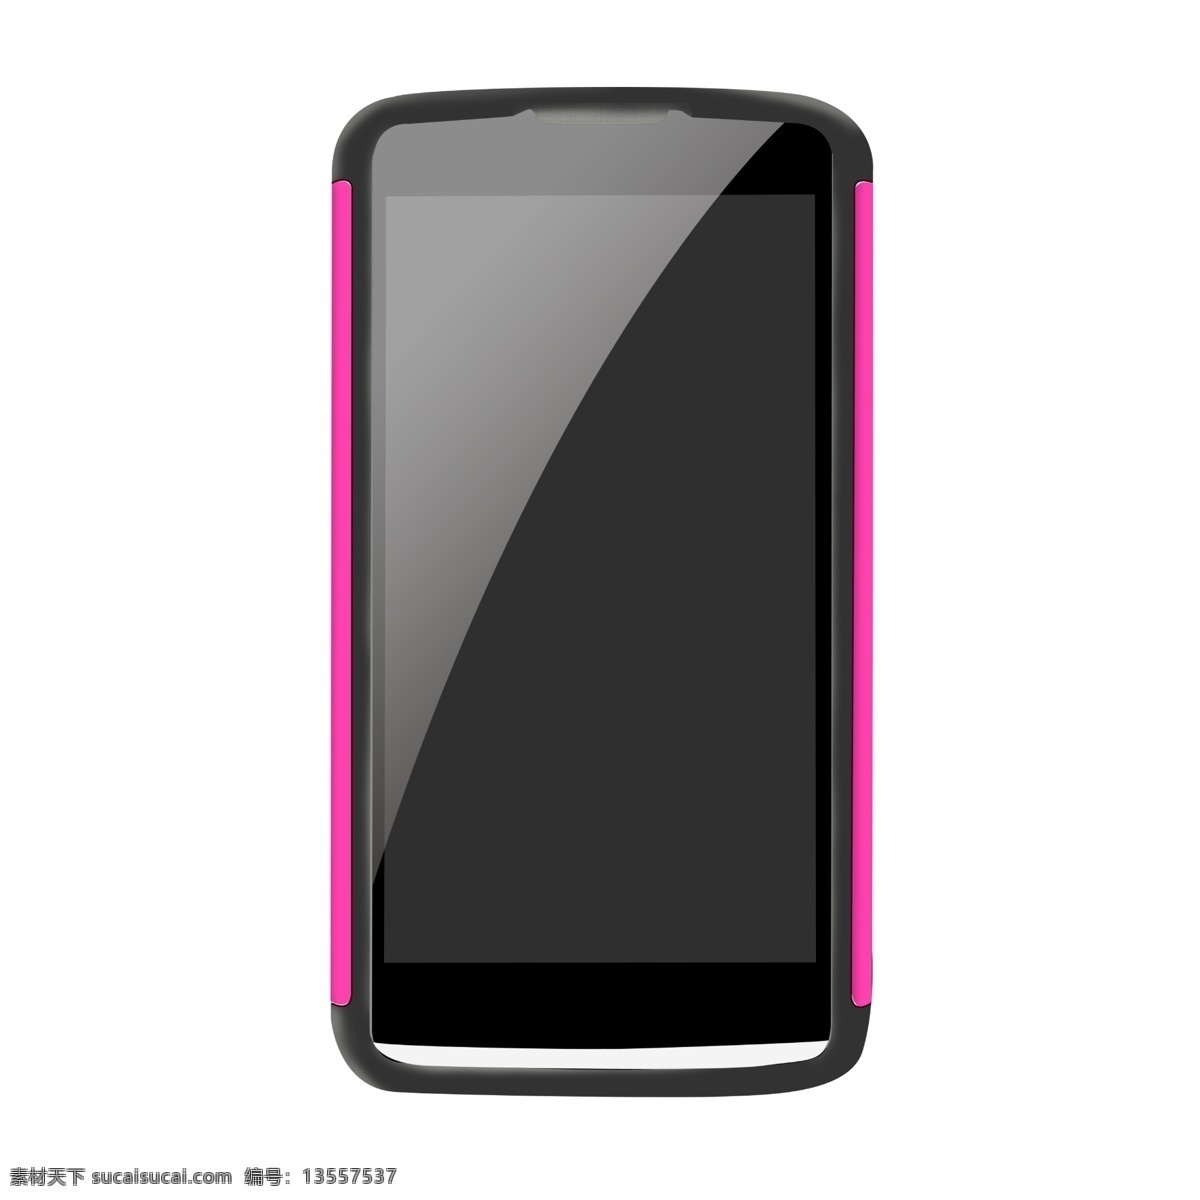 黑 粉色 3d 仿真 手机 手绘手机 仿真手机 超薄手机 系 3d手机 模拟手机 写实手机 虚拟手机